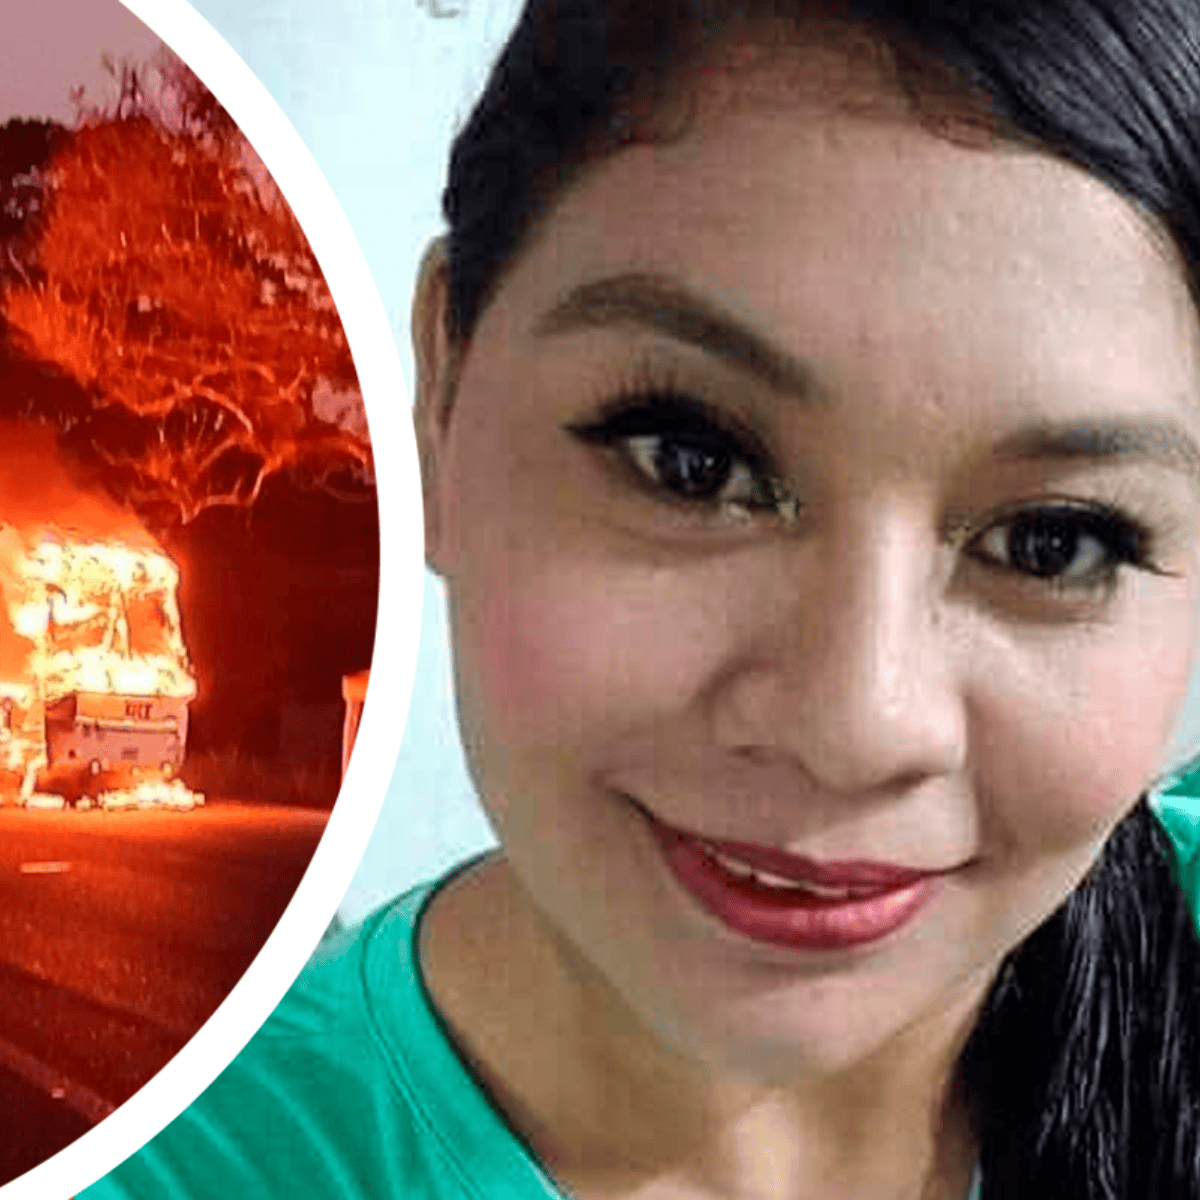 queman camión y madre arroja a su hijo por la ventana para salvarlo; ella fallece